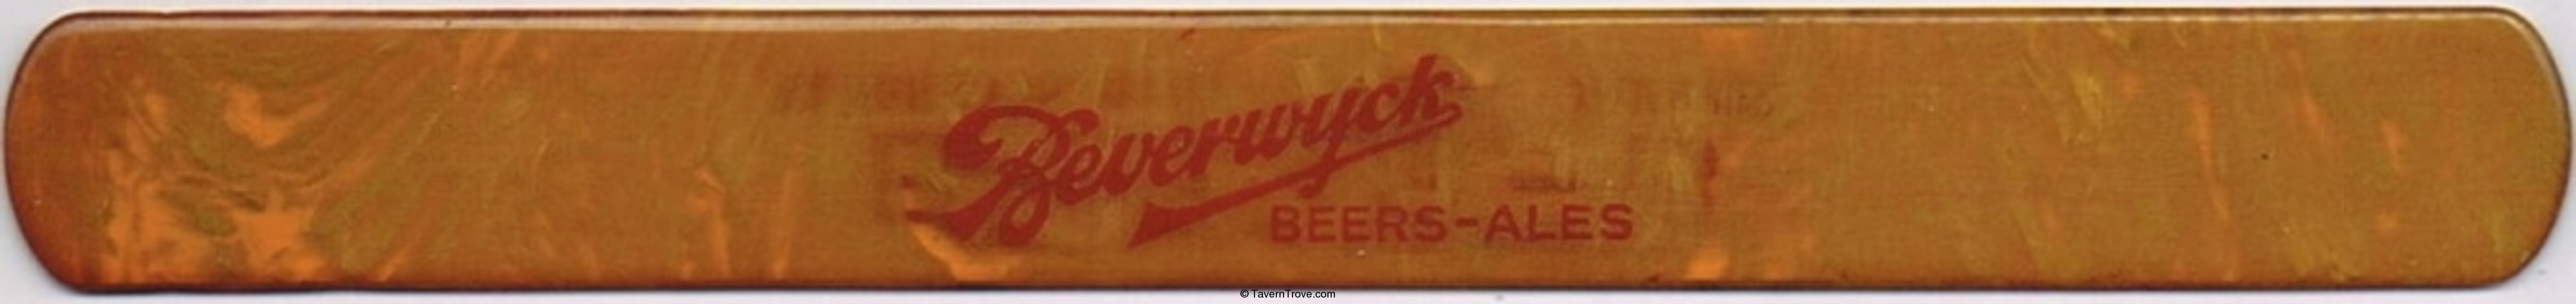 Beverwyck Beers-Ales